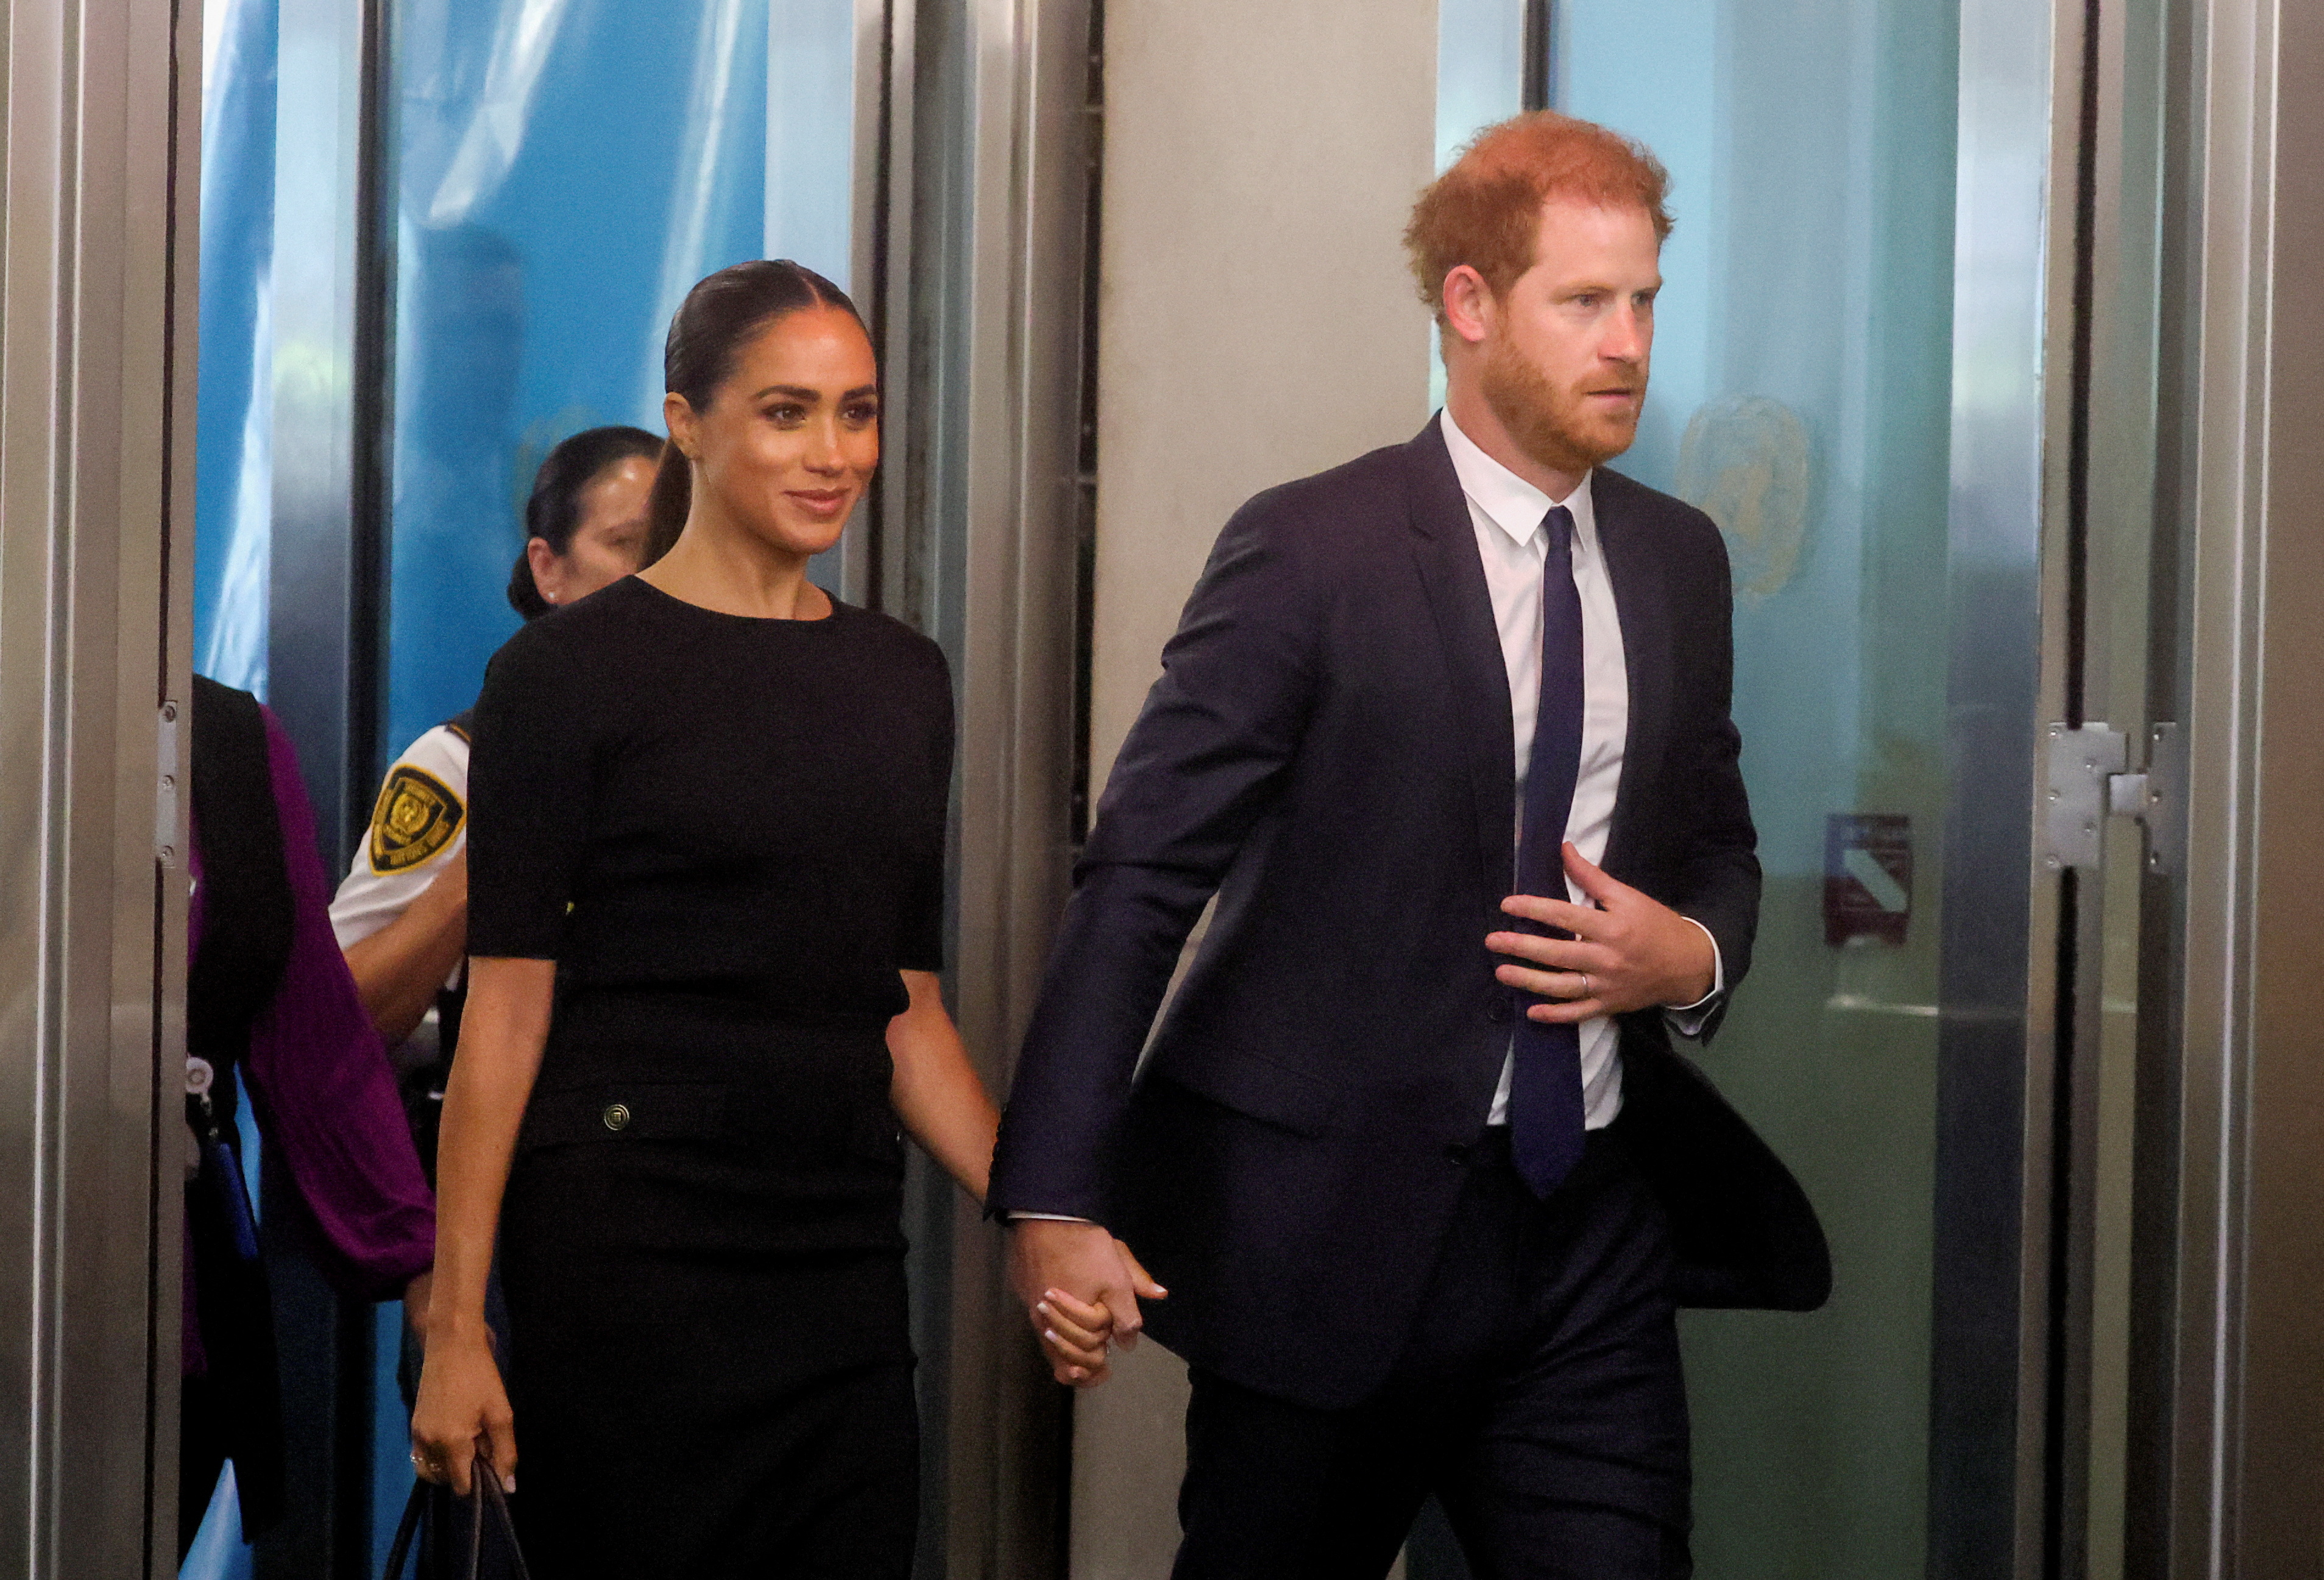 El príncipe Harry de Gran Bretaña y su esposa Meghan Mrkle, duquesa de Sussex, llegan para celebrar el día internacional de Nelson Mandela en la sede de las Naciones Unidas en Nueva York, el 18 de julio de 2022 (Reuters)